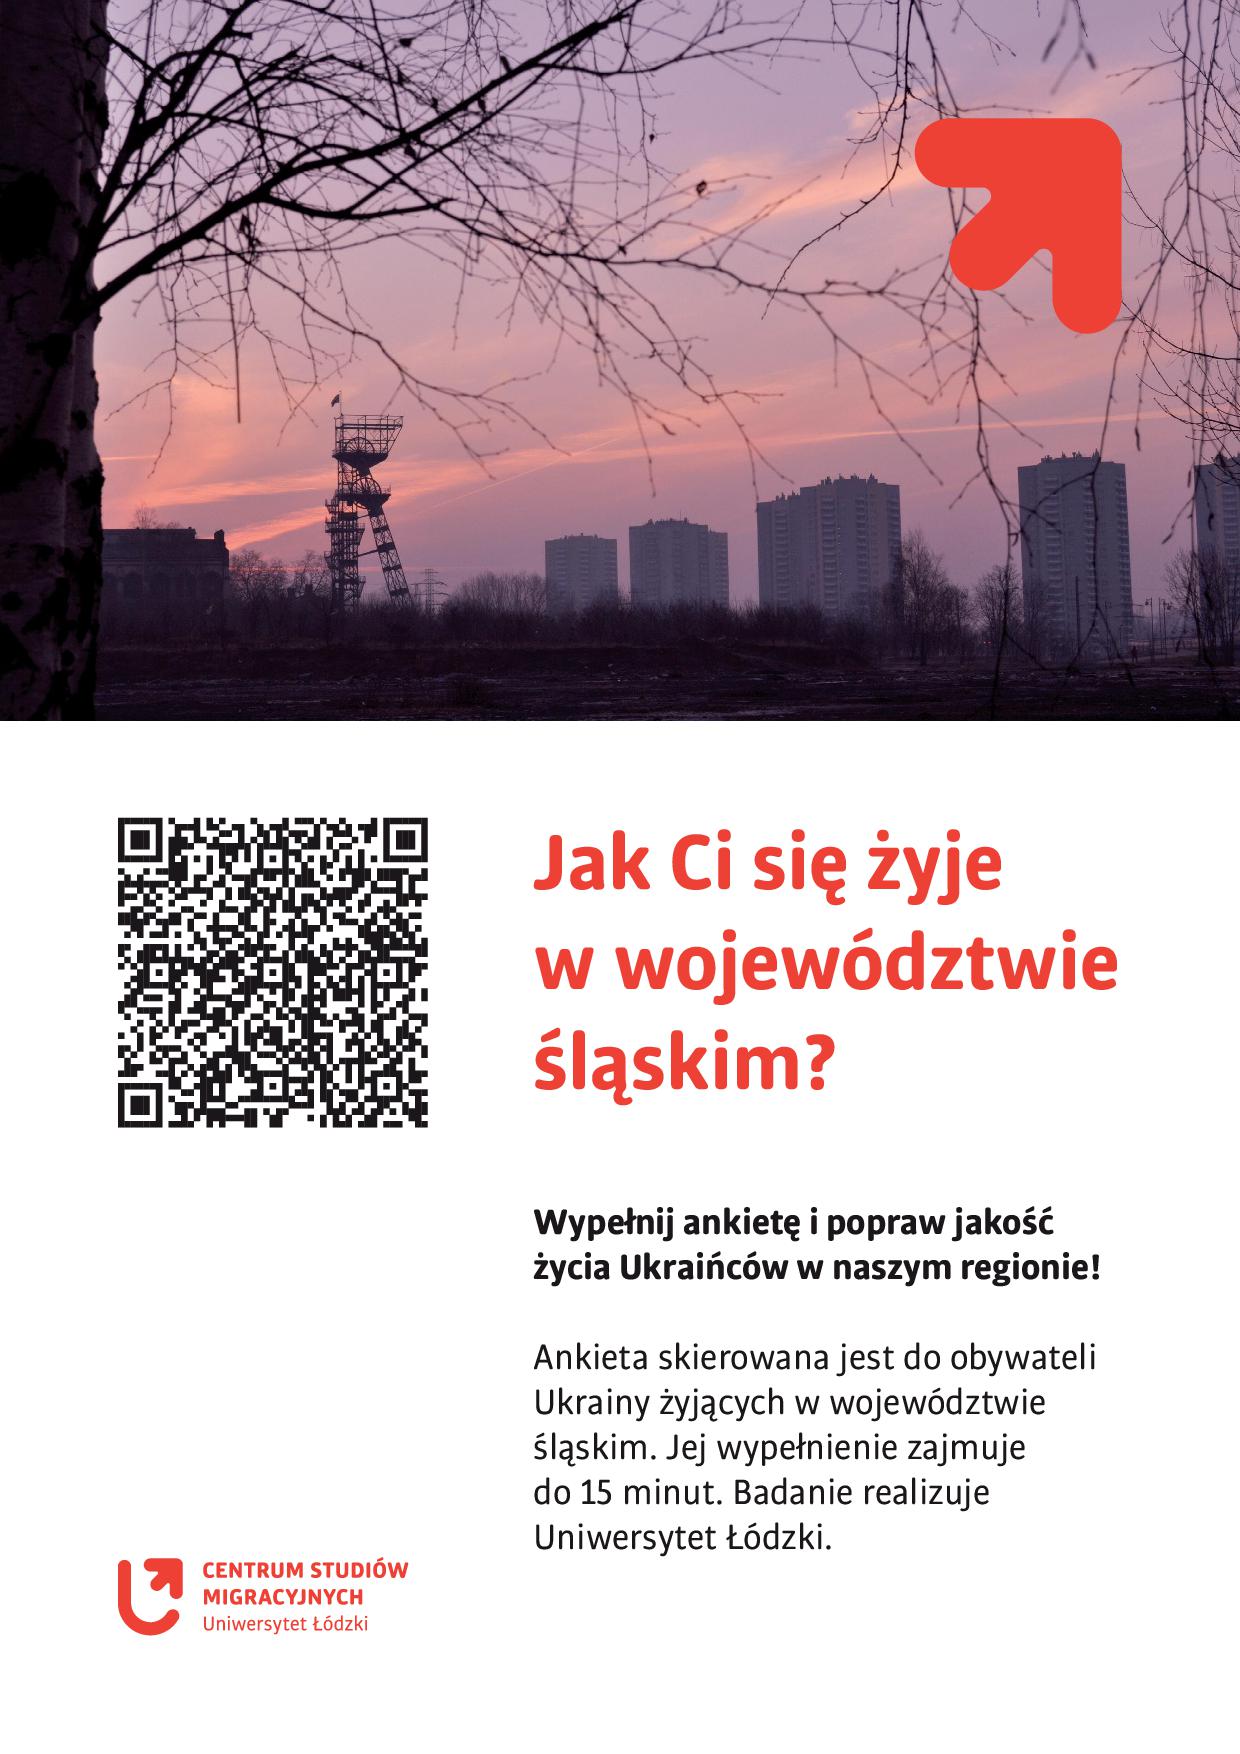 Ankieta Jak Ci się żyje w woj. śląskim skierowana do obywateli Ukrainy